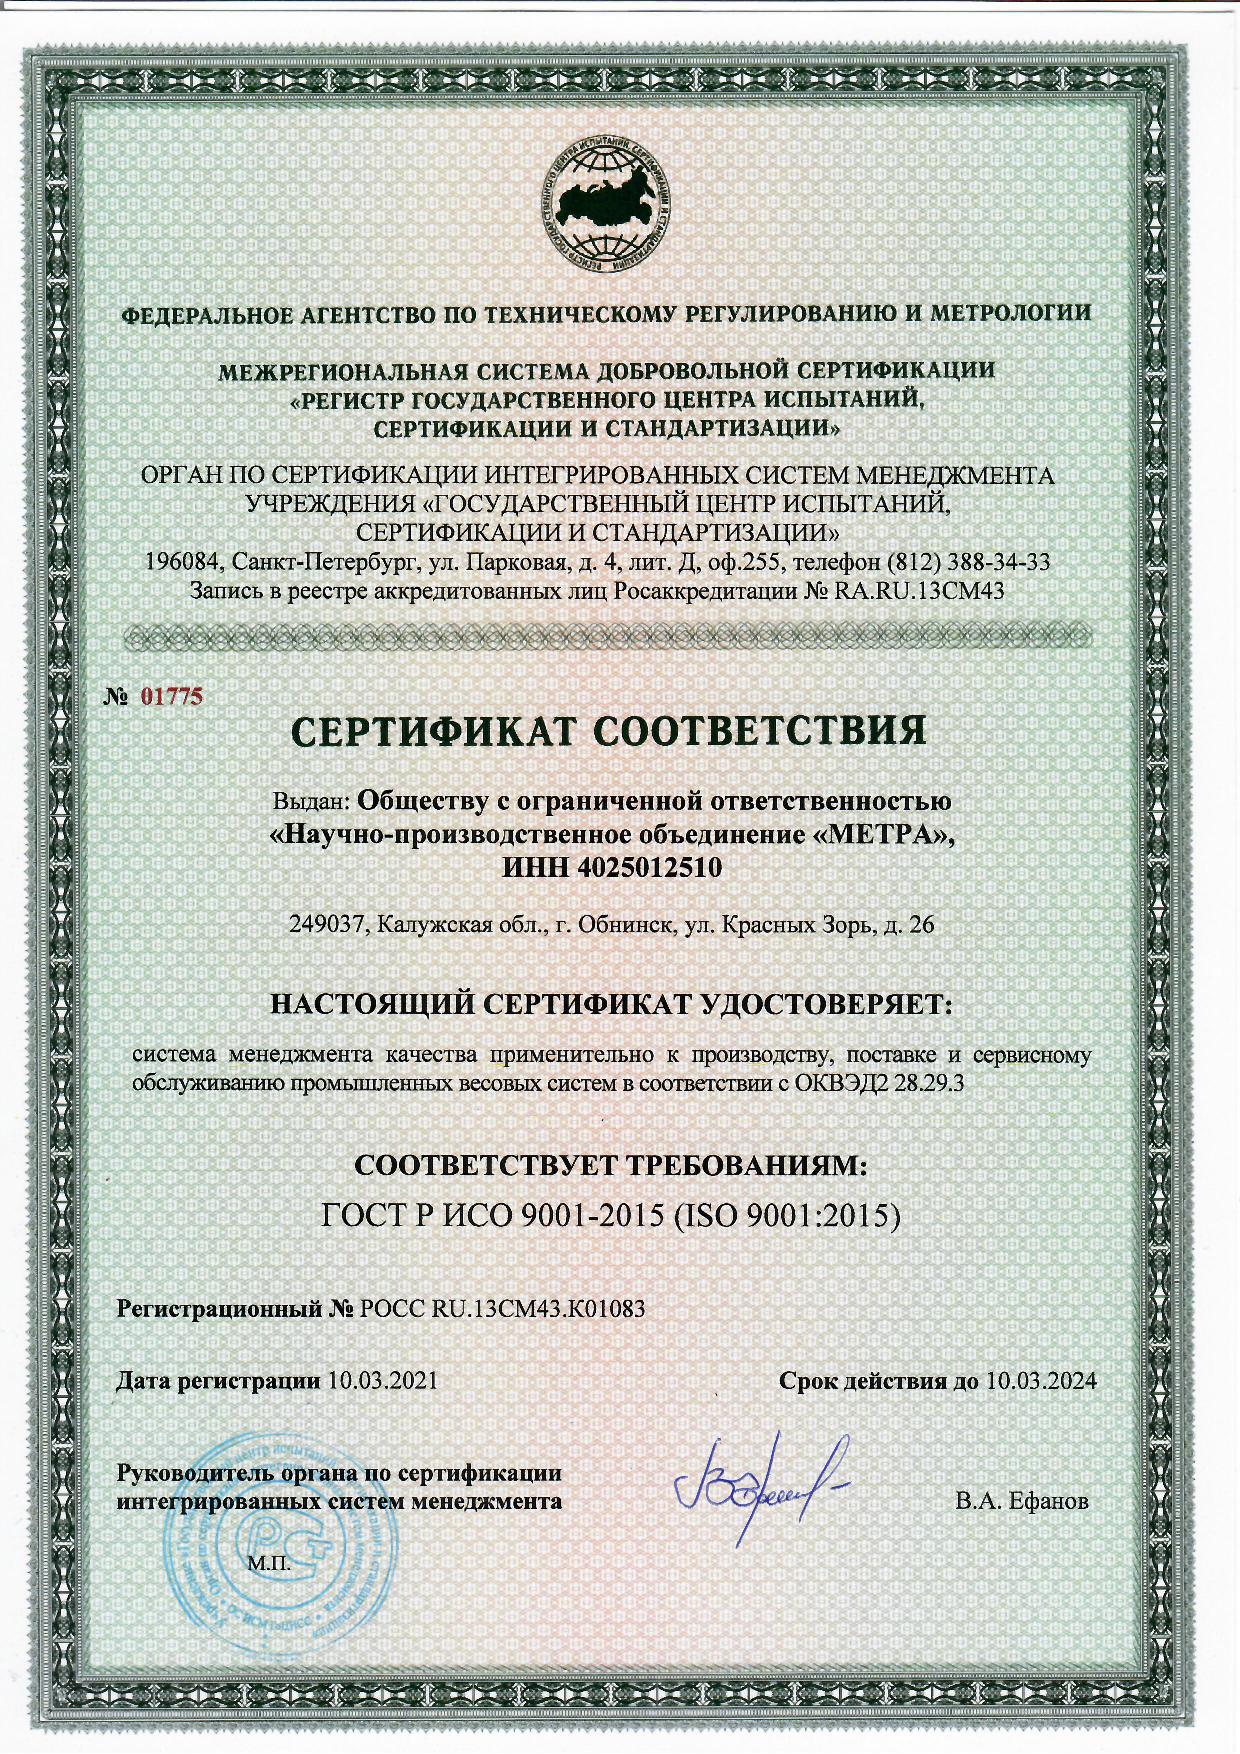 Гост 9001 2015 статус. ГОСТ Р ИСО 9001 ISO 9001 что это. Сертификат ГОСТ Р ИСО 9001-2015. Сертификат СМК ISO 9001. Сертификат системы менеджмента качества СМК стандарта ISO 9001.